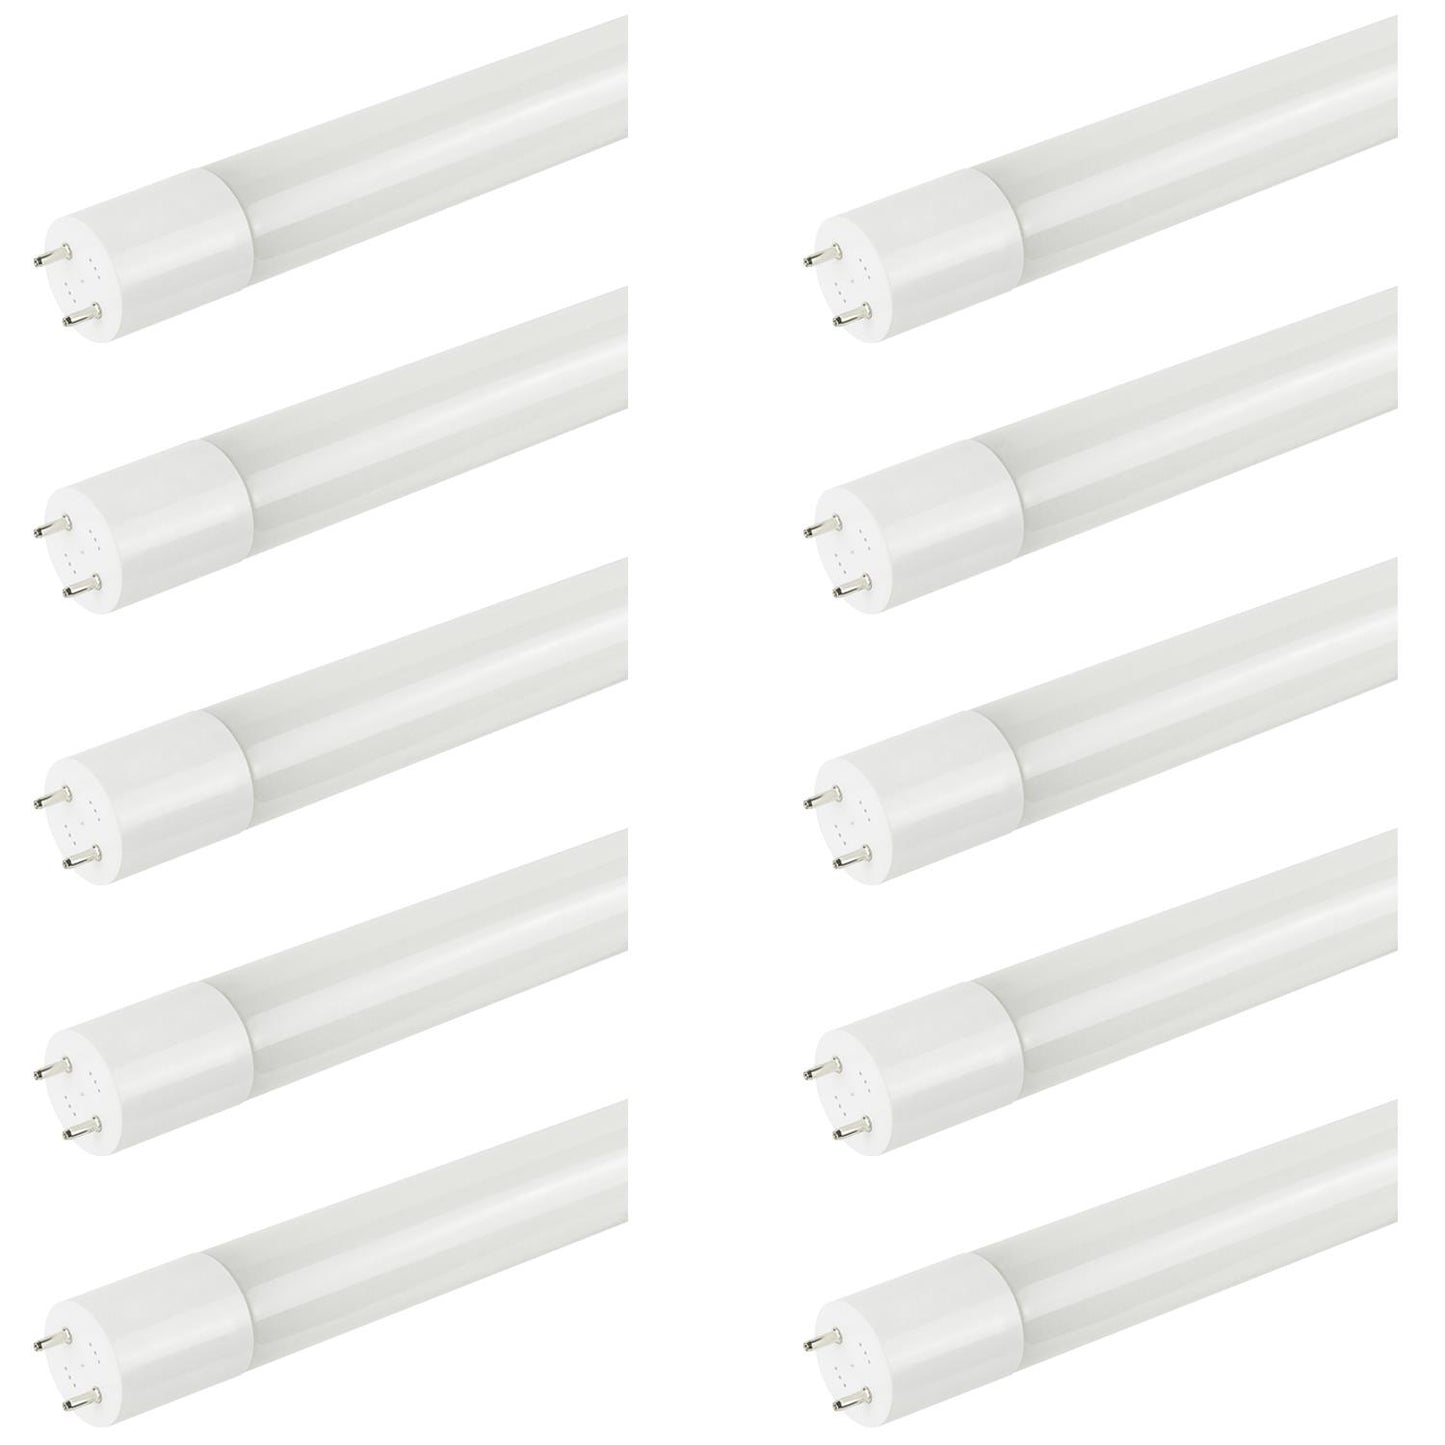 Sunlite T8/LED/4'/11.5W/IS/DLC/40K LED 11.5W 4 Foot Instant Start T8 Tube Light Fixtures, 4000K Cool White Light, G13 Base